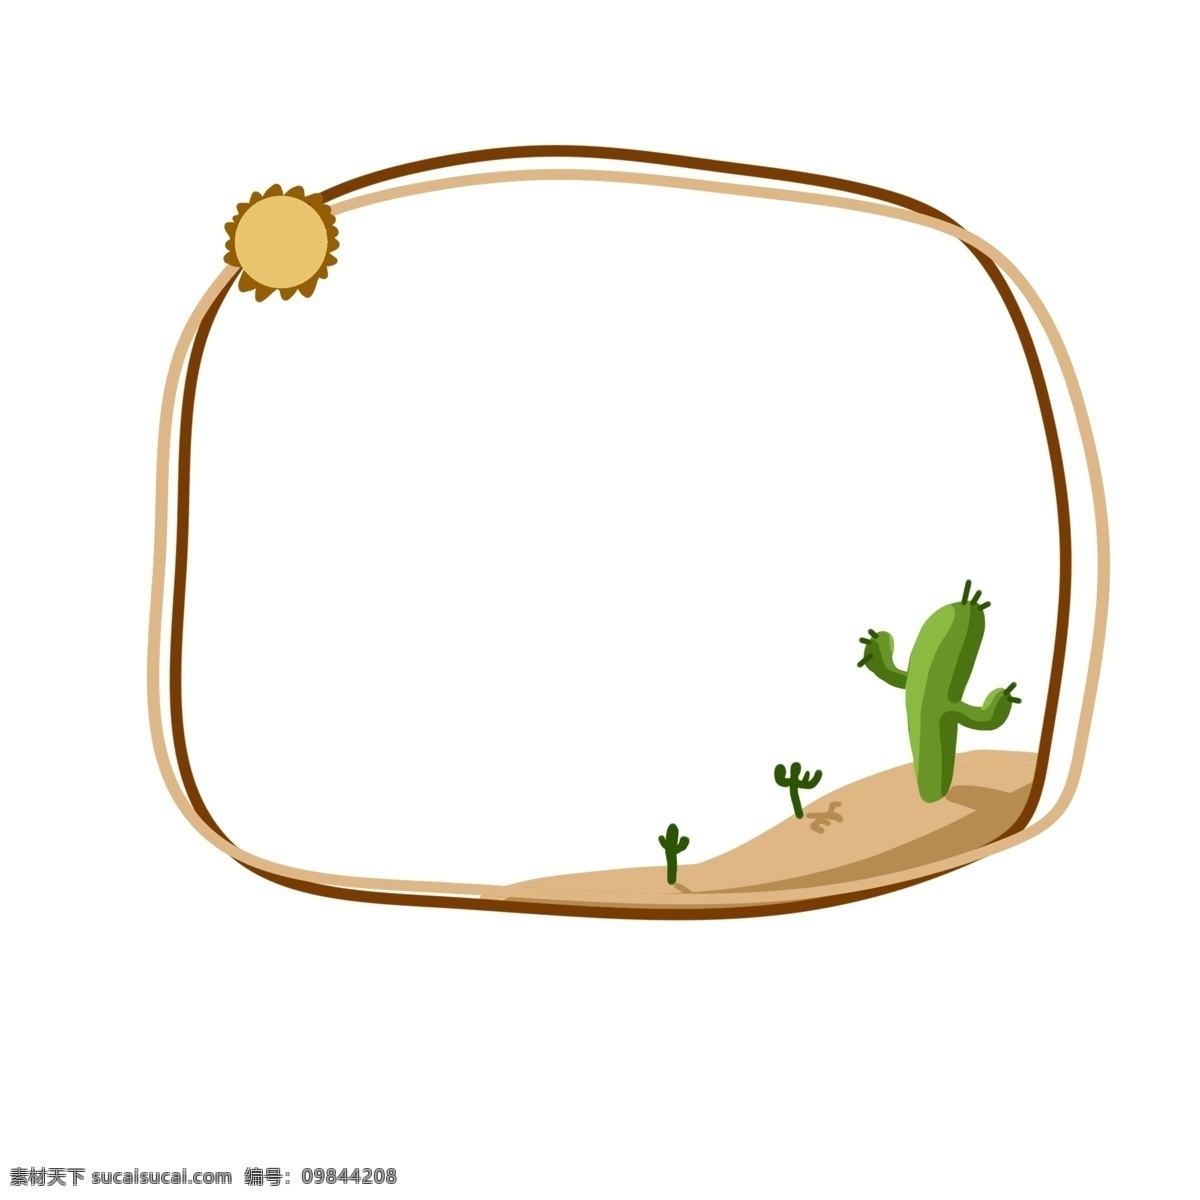 手绘 炎热 沙漠 插画 绿色的仙人掌 炎热的沙漠 大大的太阳 卡通边框 手绘沙漠边框 漂亮的边框